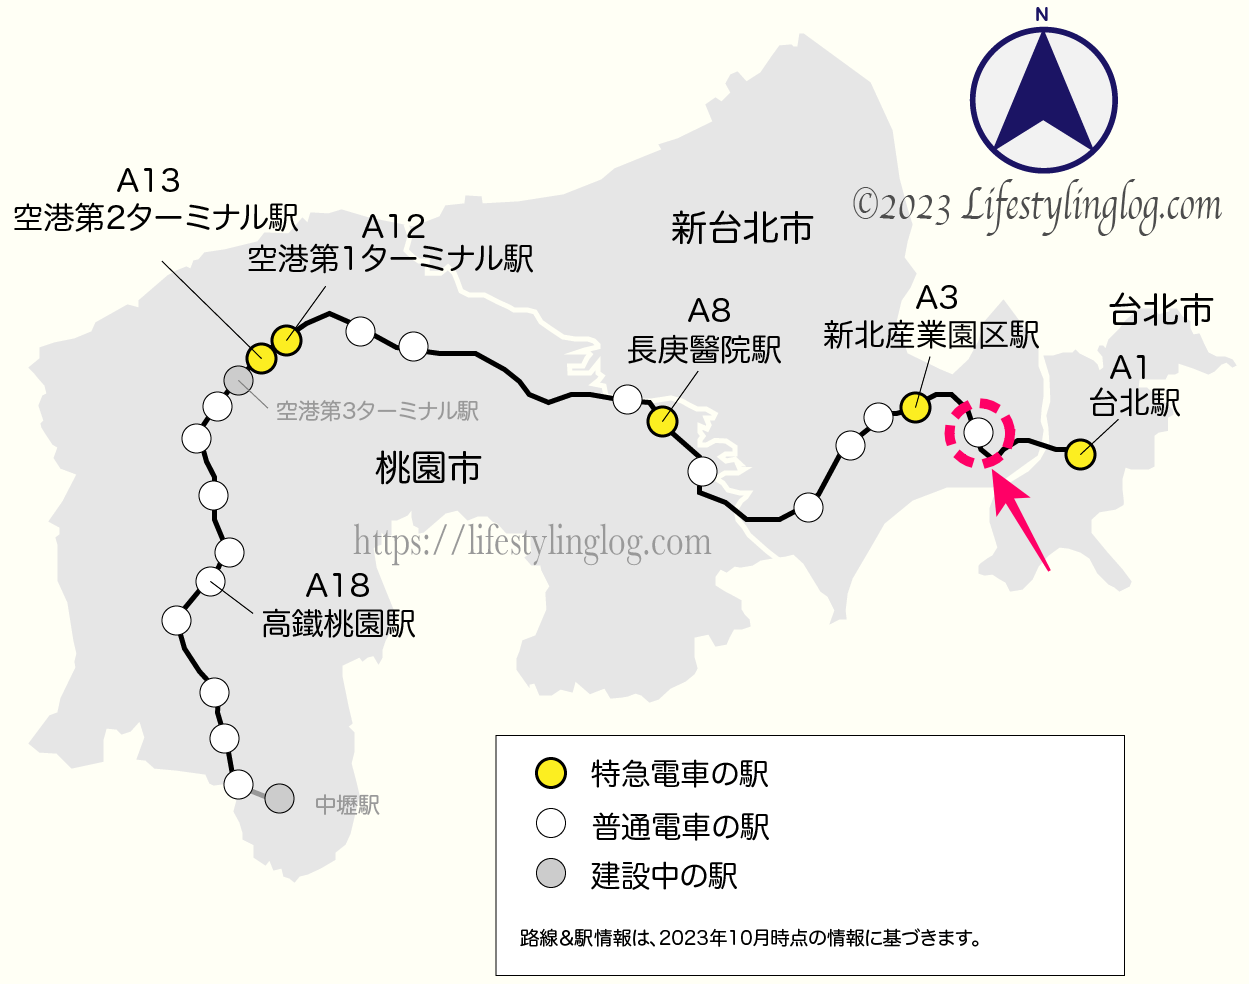 桃園MRTの駅の位置関係を示す地図